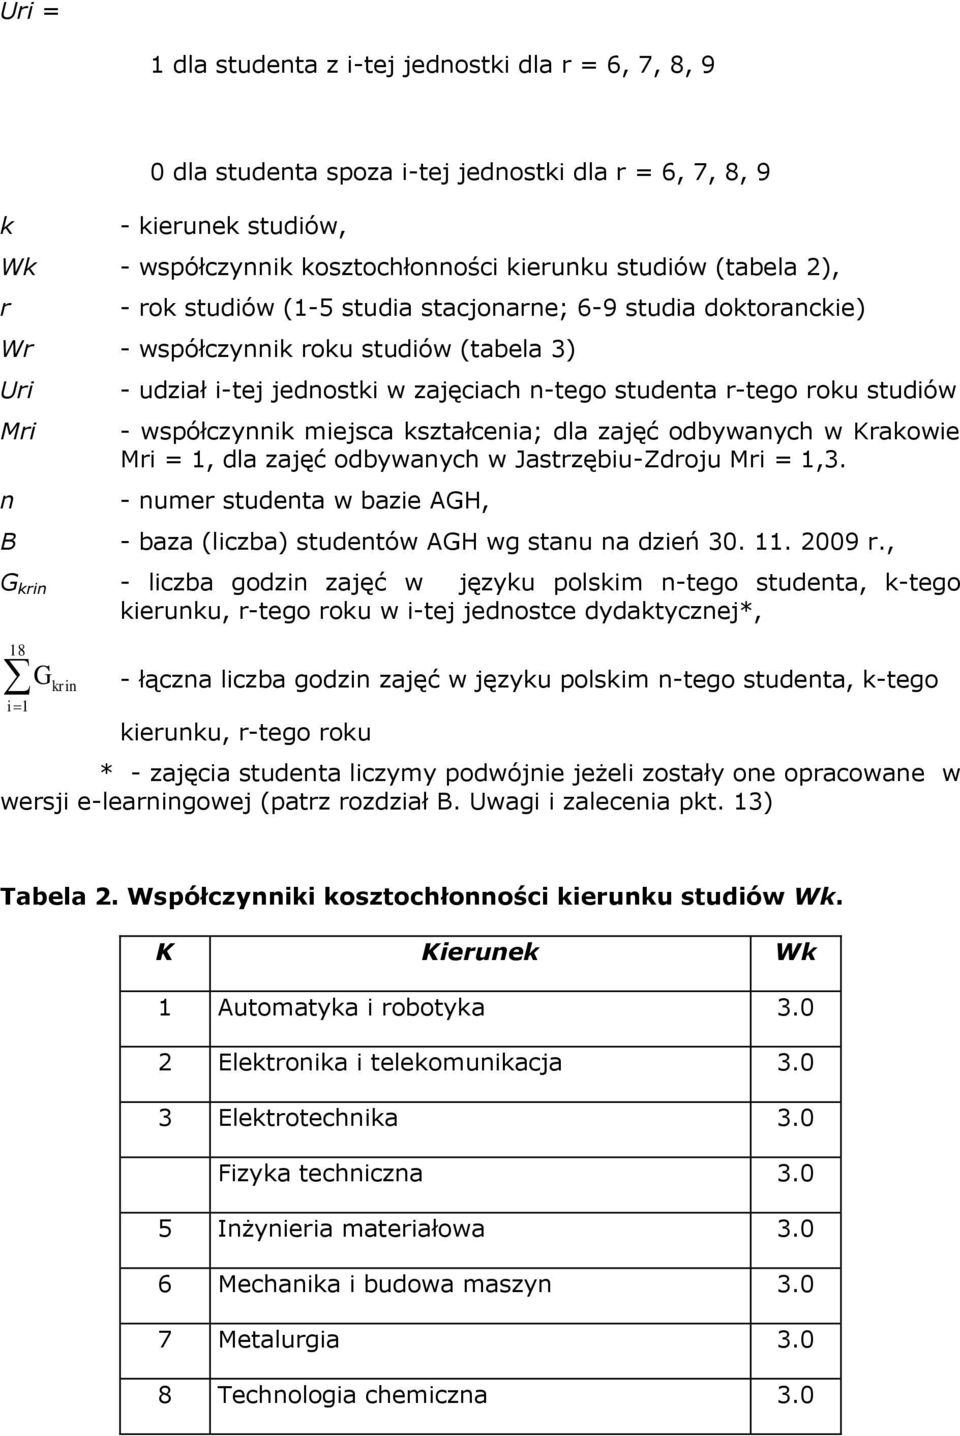 kształcena; dla zajęć odbywanych w Krakowe Mr = 1, dla zajęć odbywanych w Jastrzębu-Zdroju Mr = 1,3. - numer studenta w baze AGH, - baza (lczba) studentów AGH wg stanu na dzeń 30. 11. 2009 r.